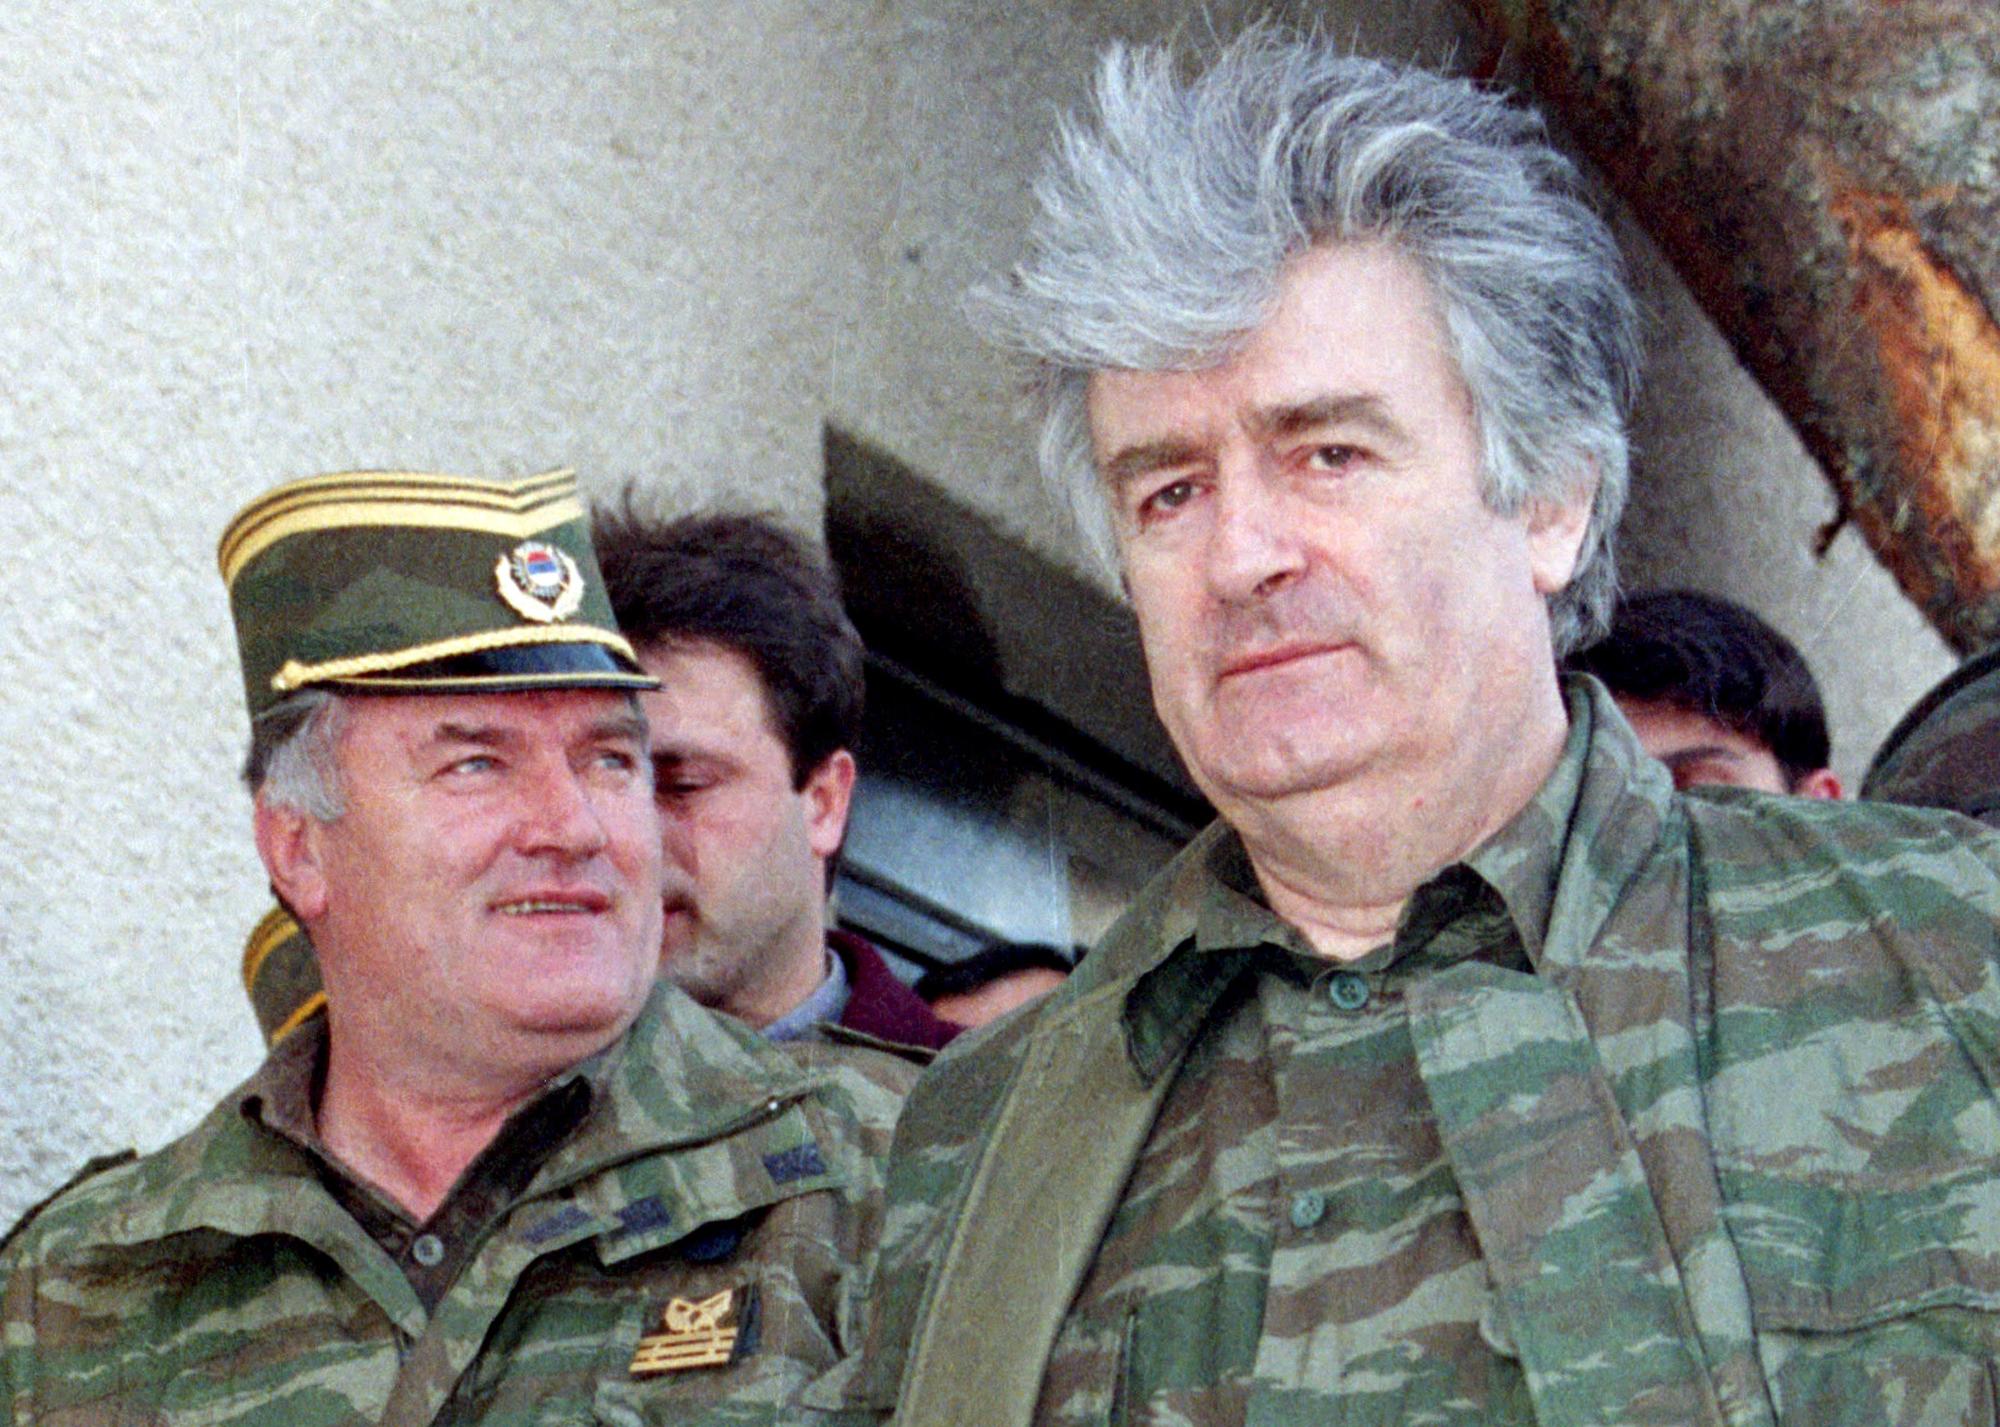 Ratko Mladic et Radovan Karadzic sont accusés des mêmes crimes à La Haye. [Ranko Cukovic/Files]